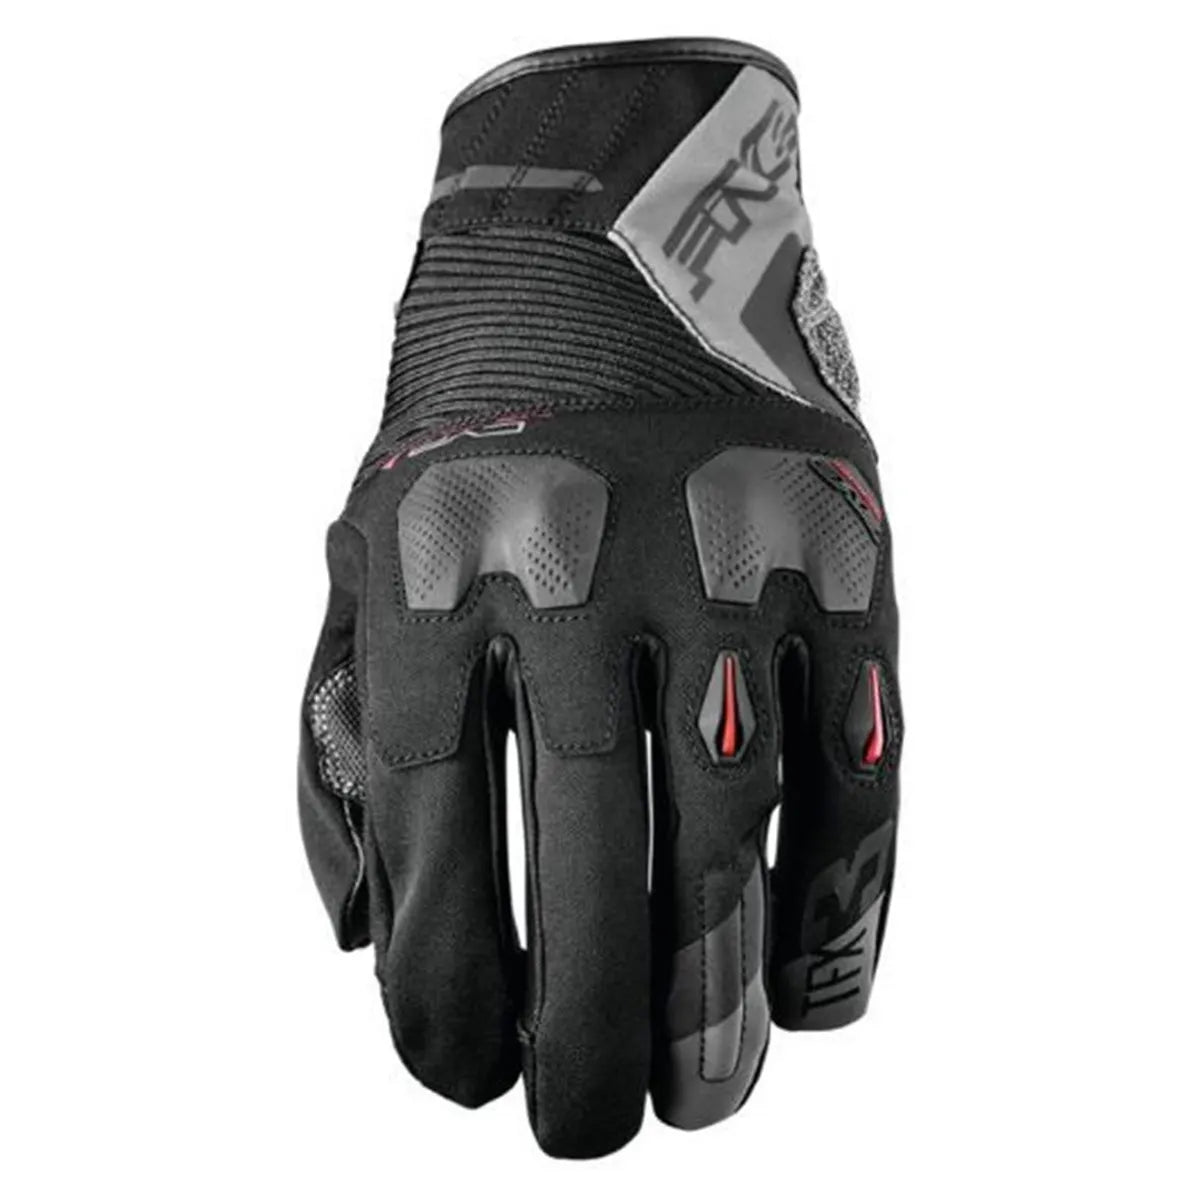 Five5 TFX3 Gloves